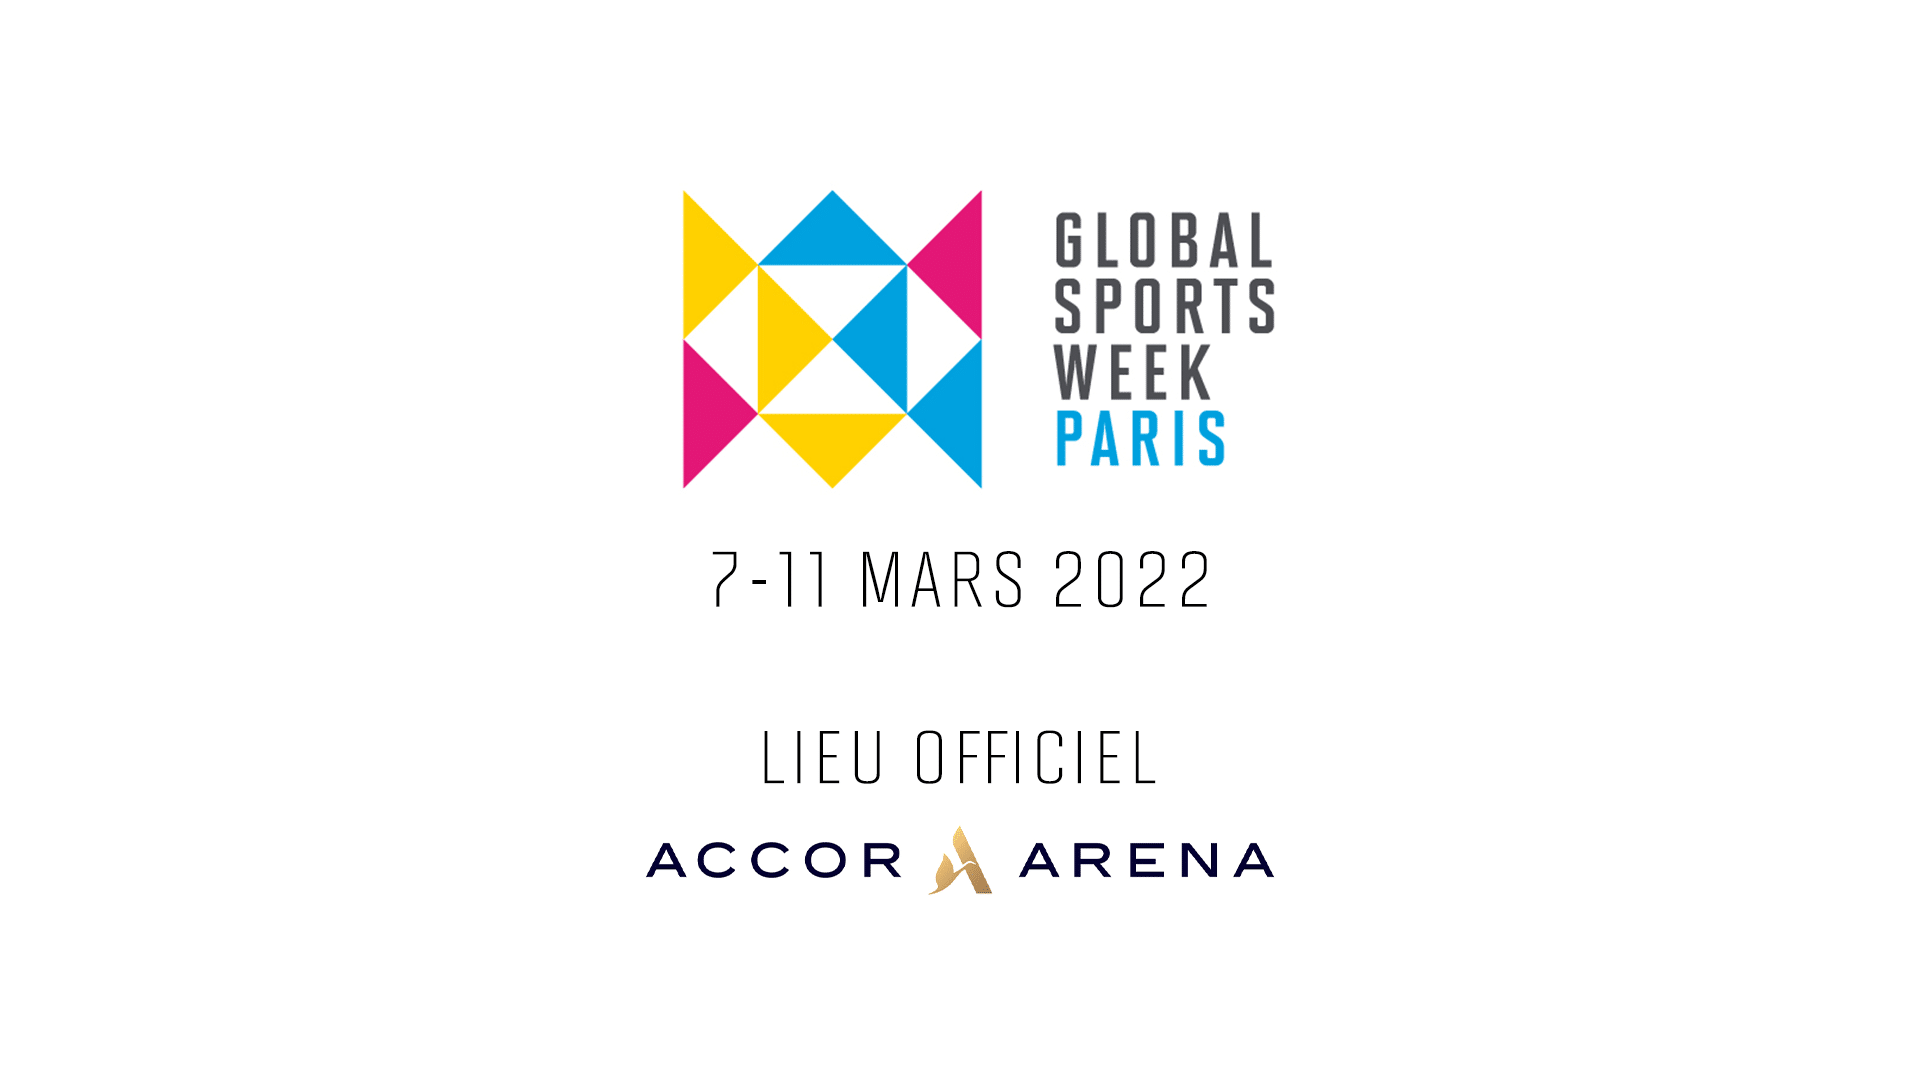 Global Sports Week Paris